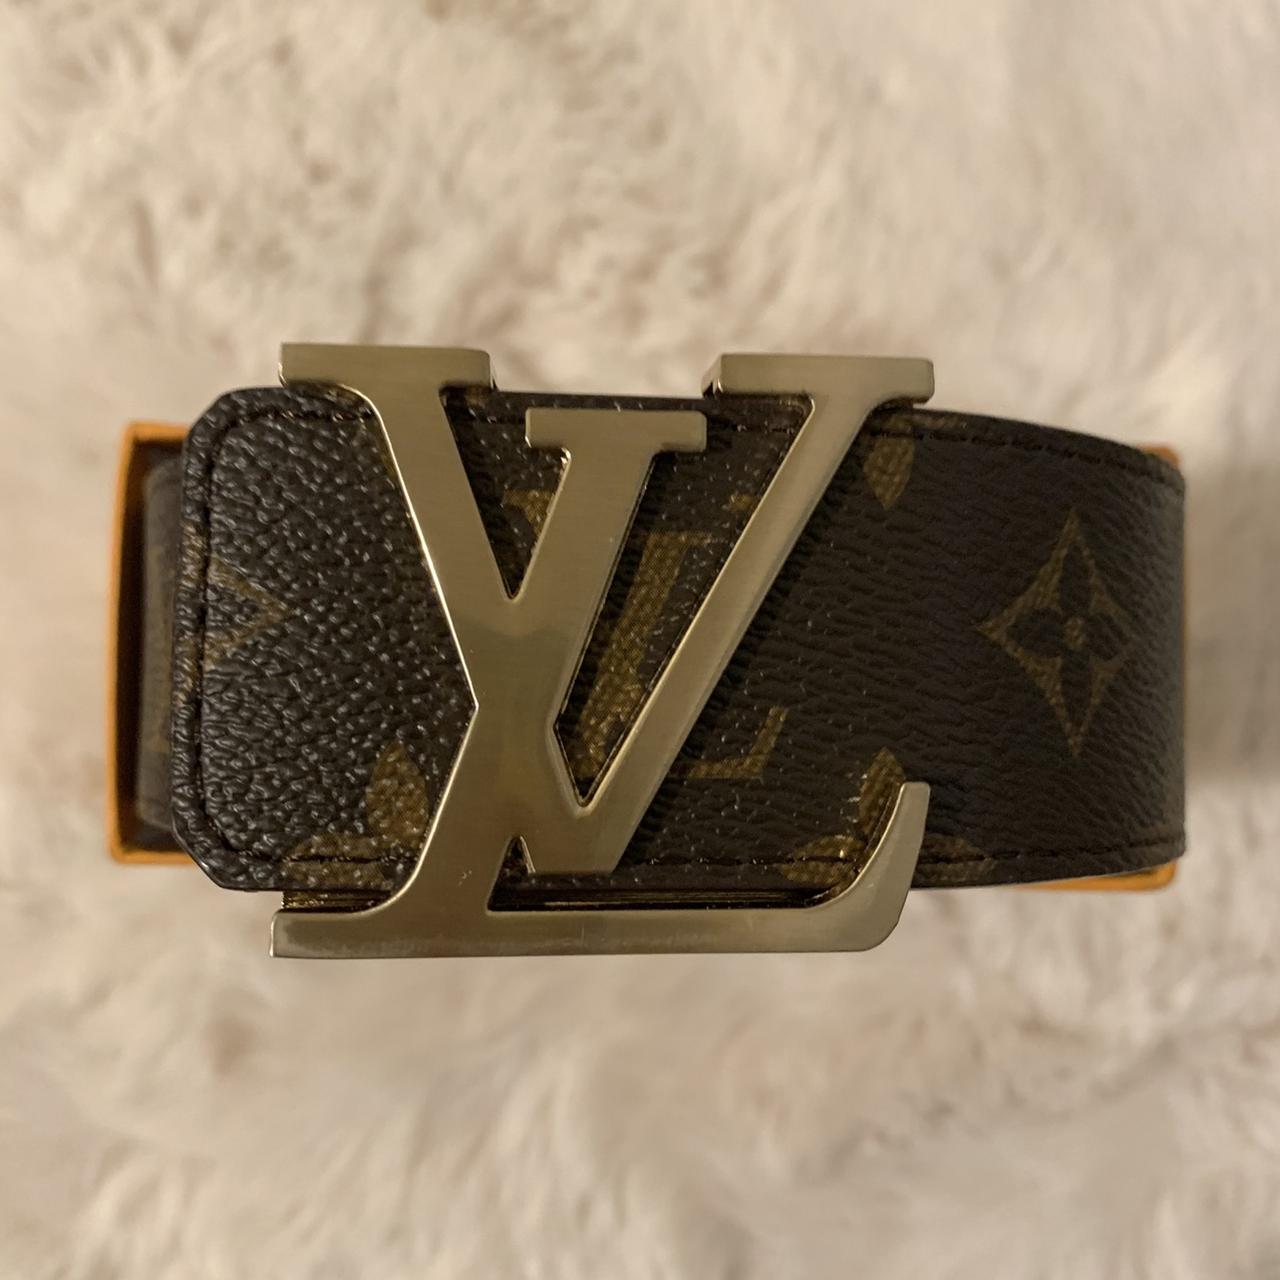 Louis Vuitton Gold Buckle Leather Belt Rare vintage - Depop